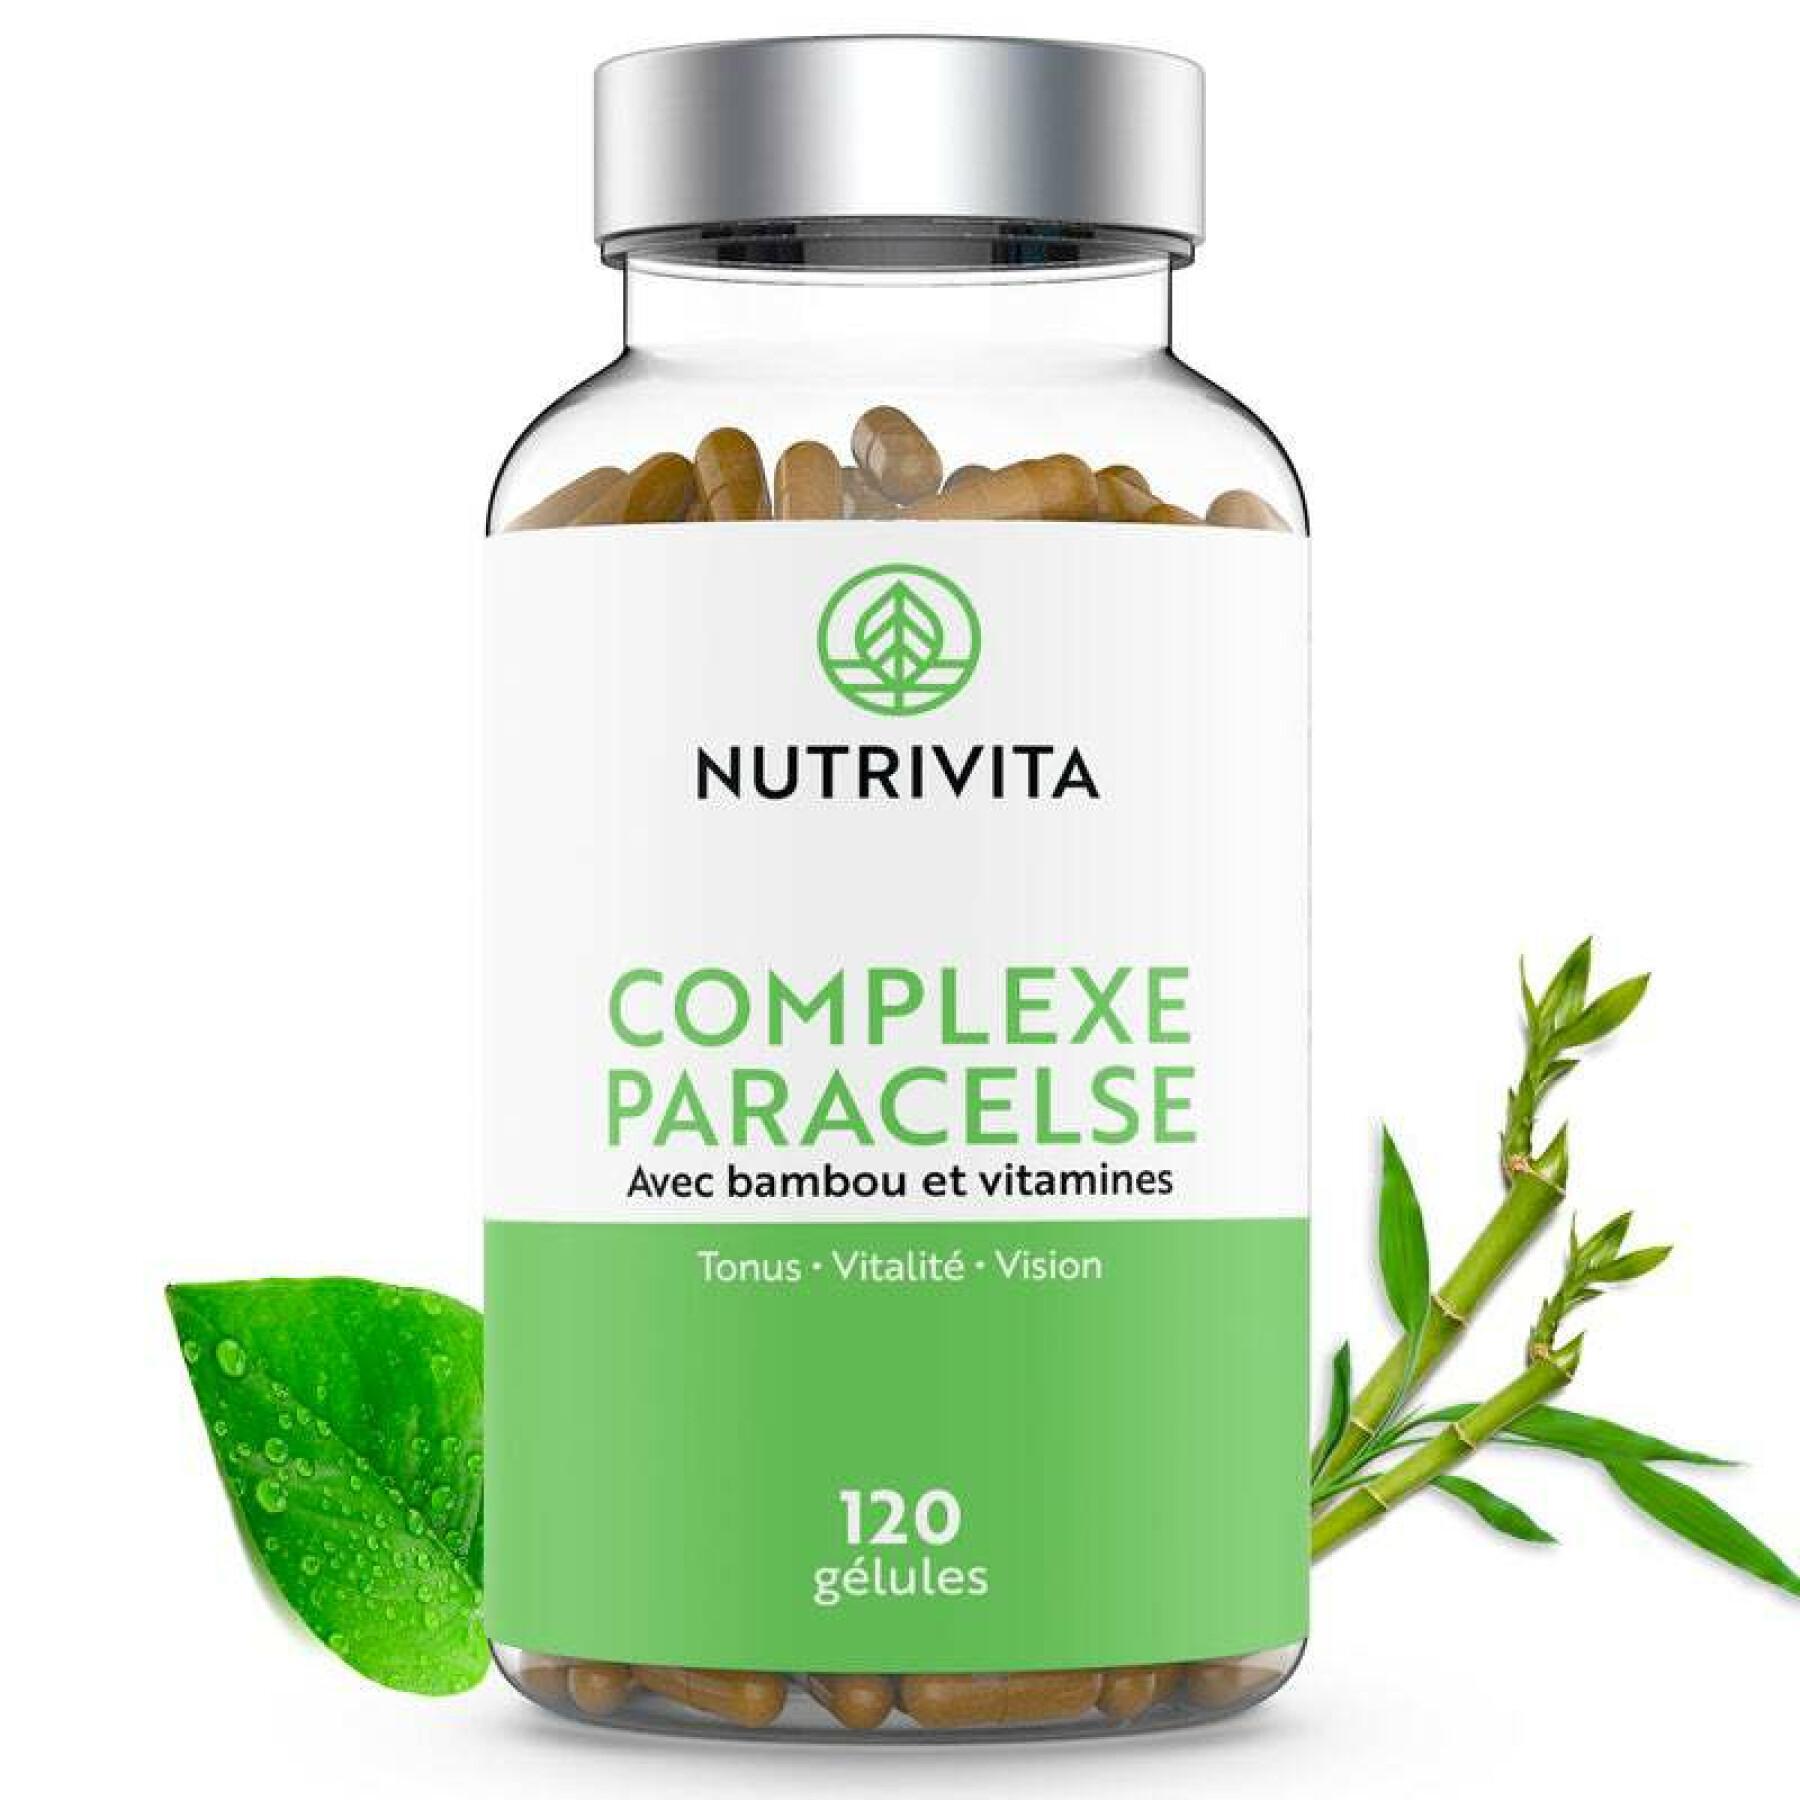 Complément alimentaire Complexe Paracelse - 120 gélules Nutrivita